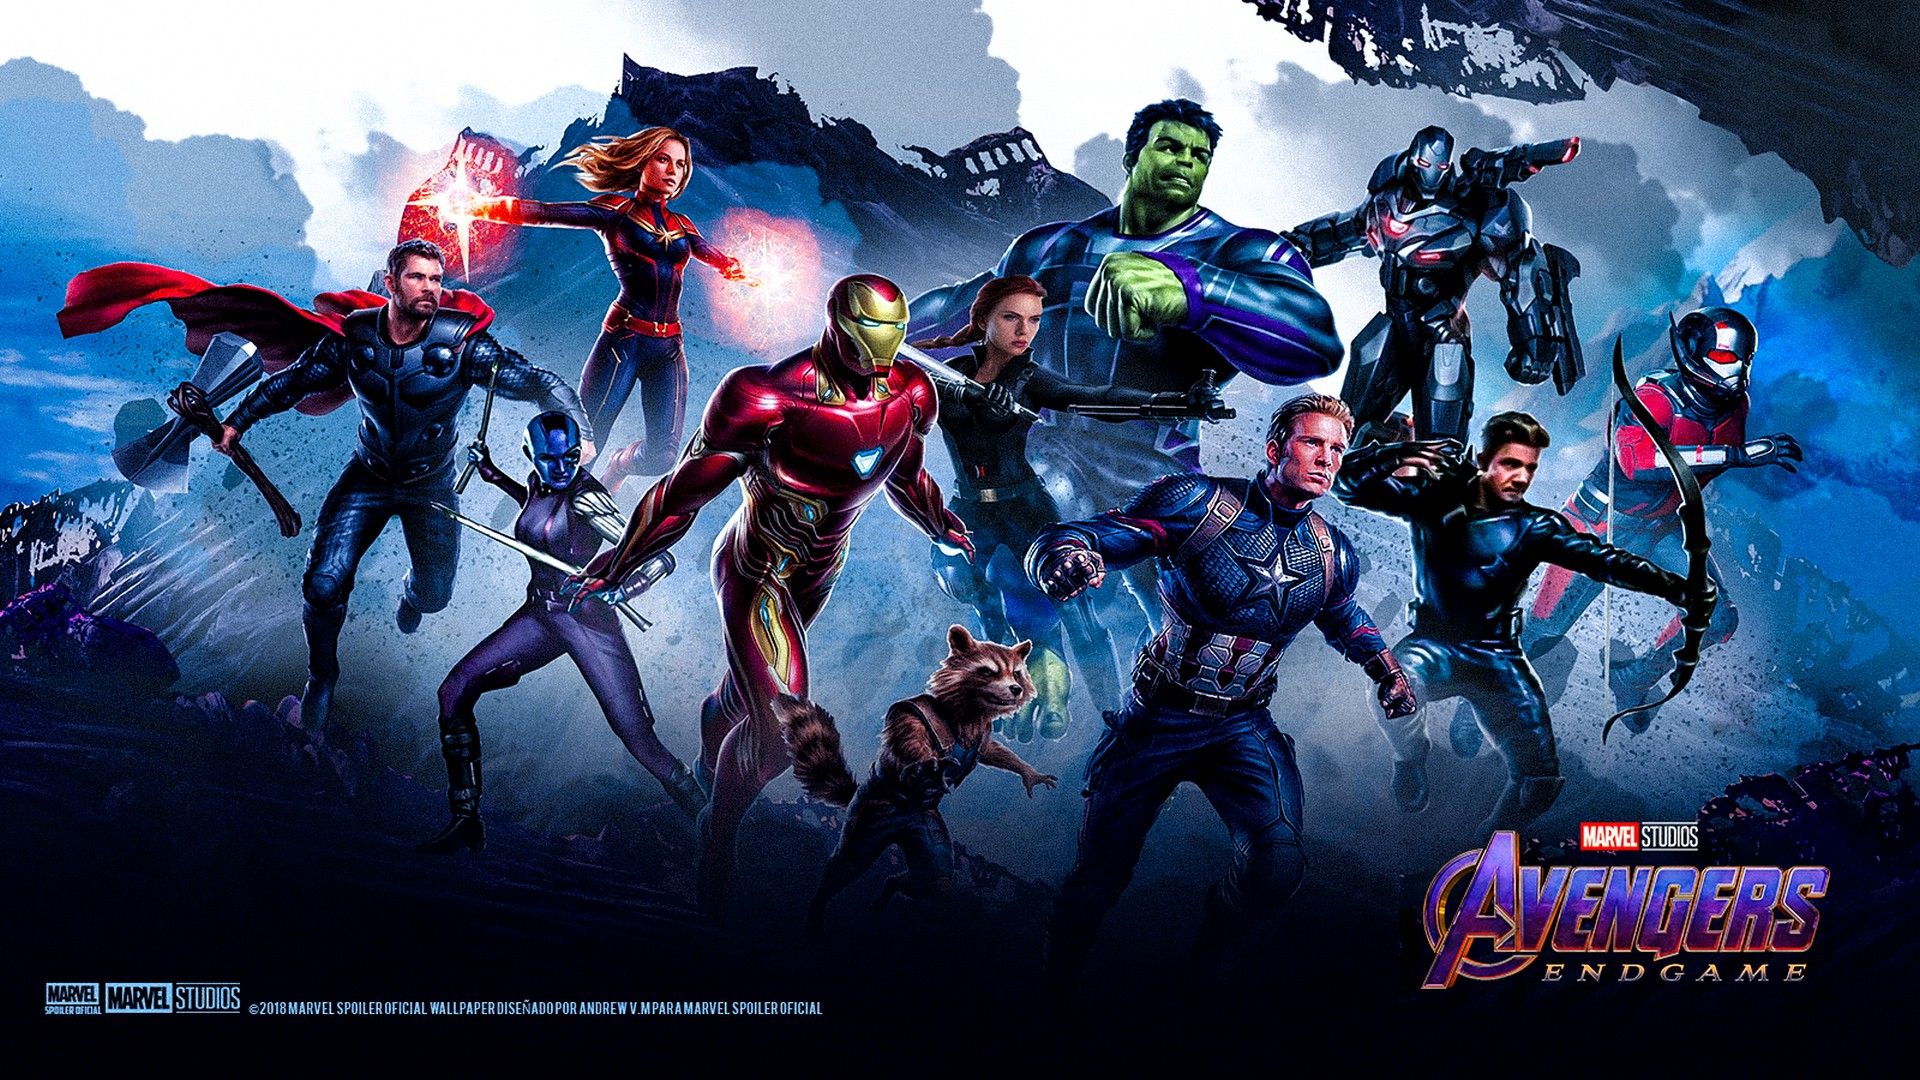 Avengers Endgame Captain Marvel Poster Art Wallpapers